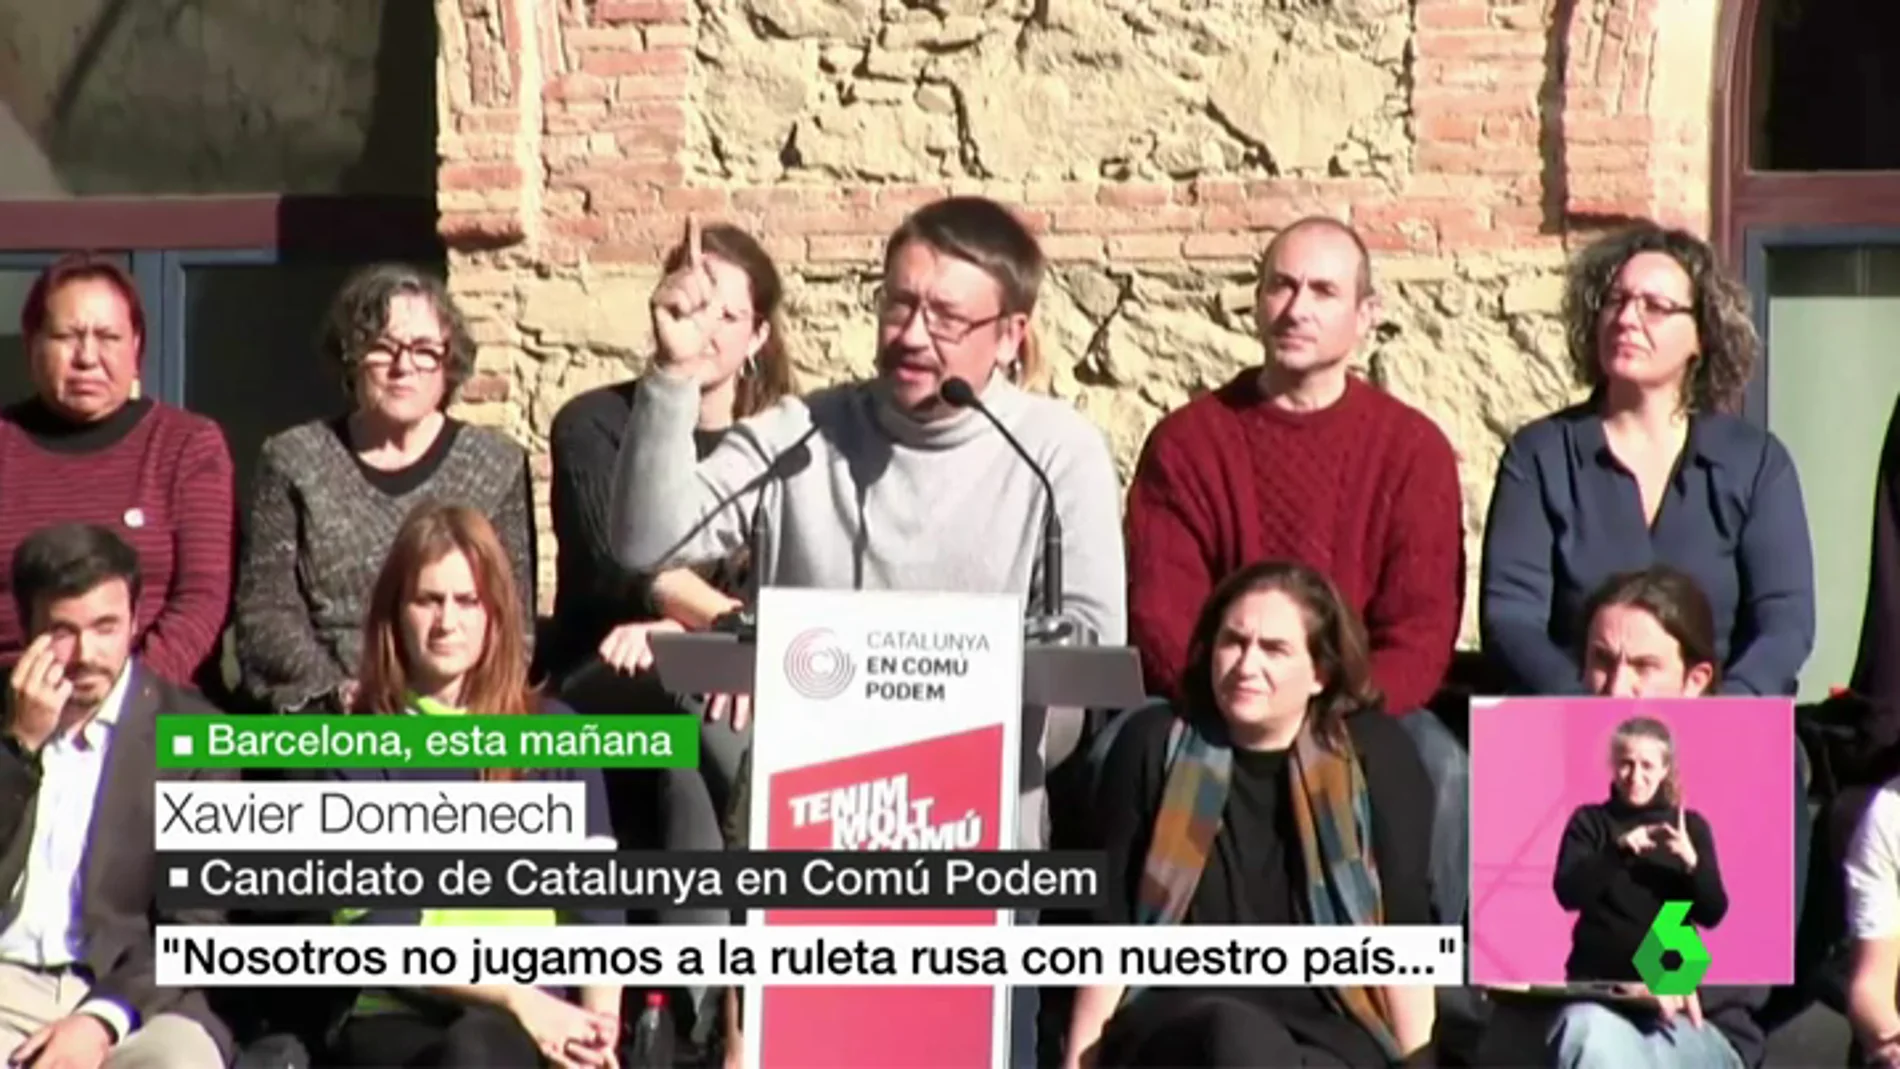 El candidato de Catalunya en Comú Podem, Xavier Domènech